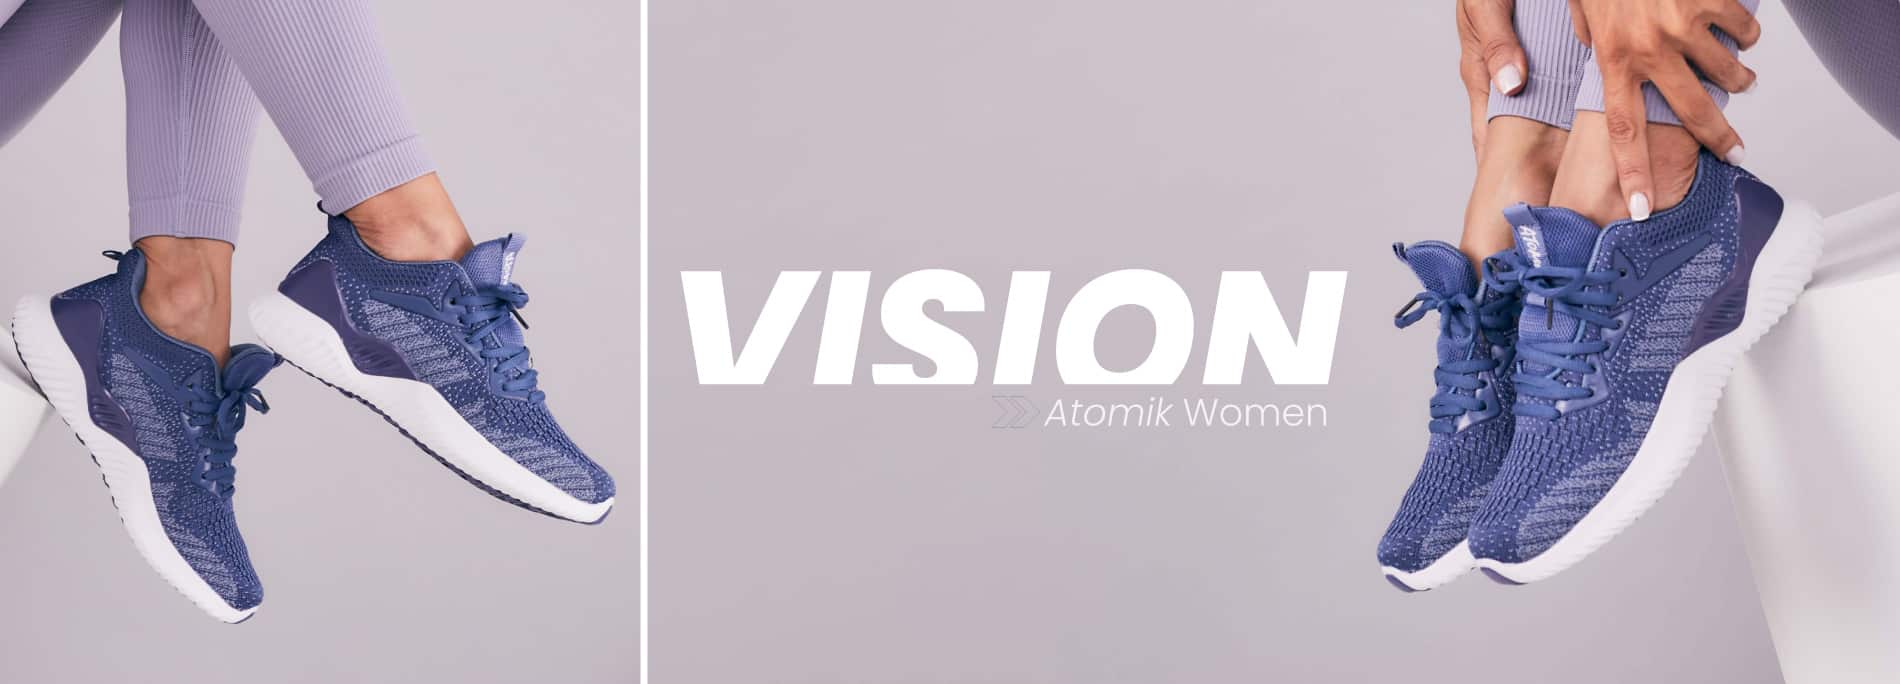 Banner-desktop-Vision-ATK